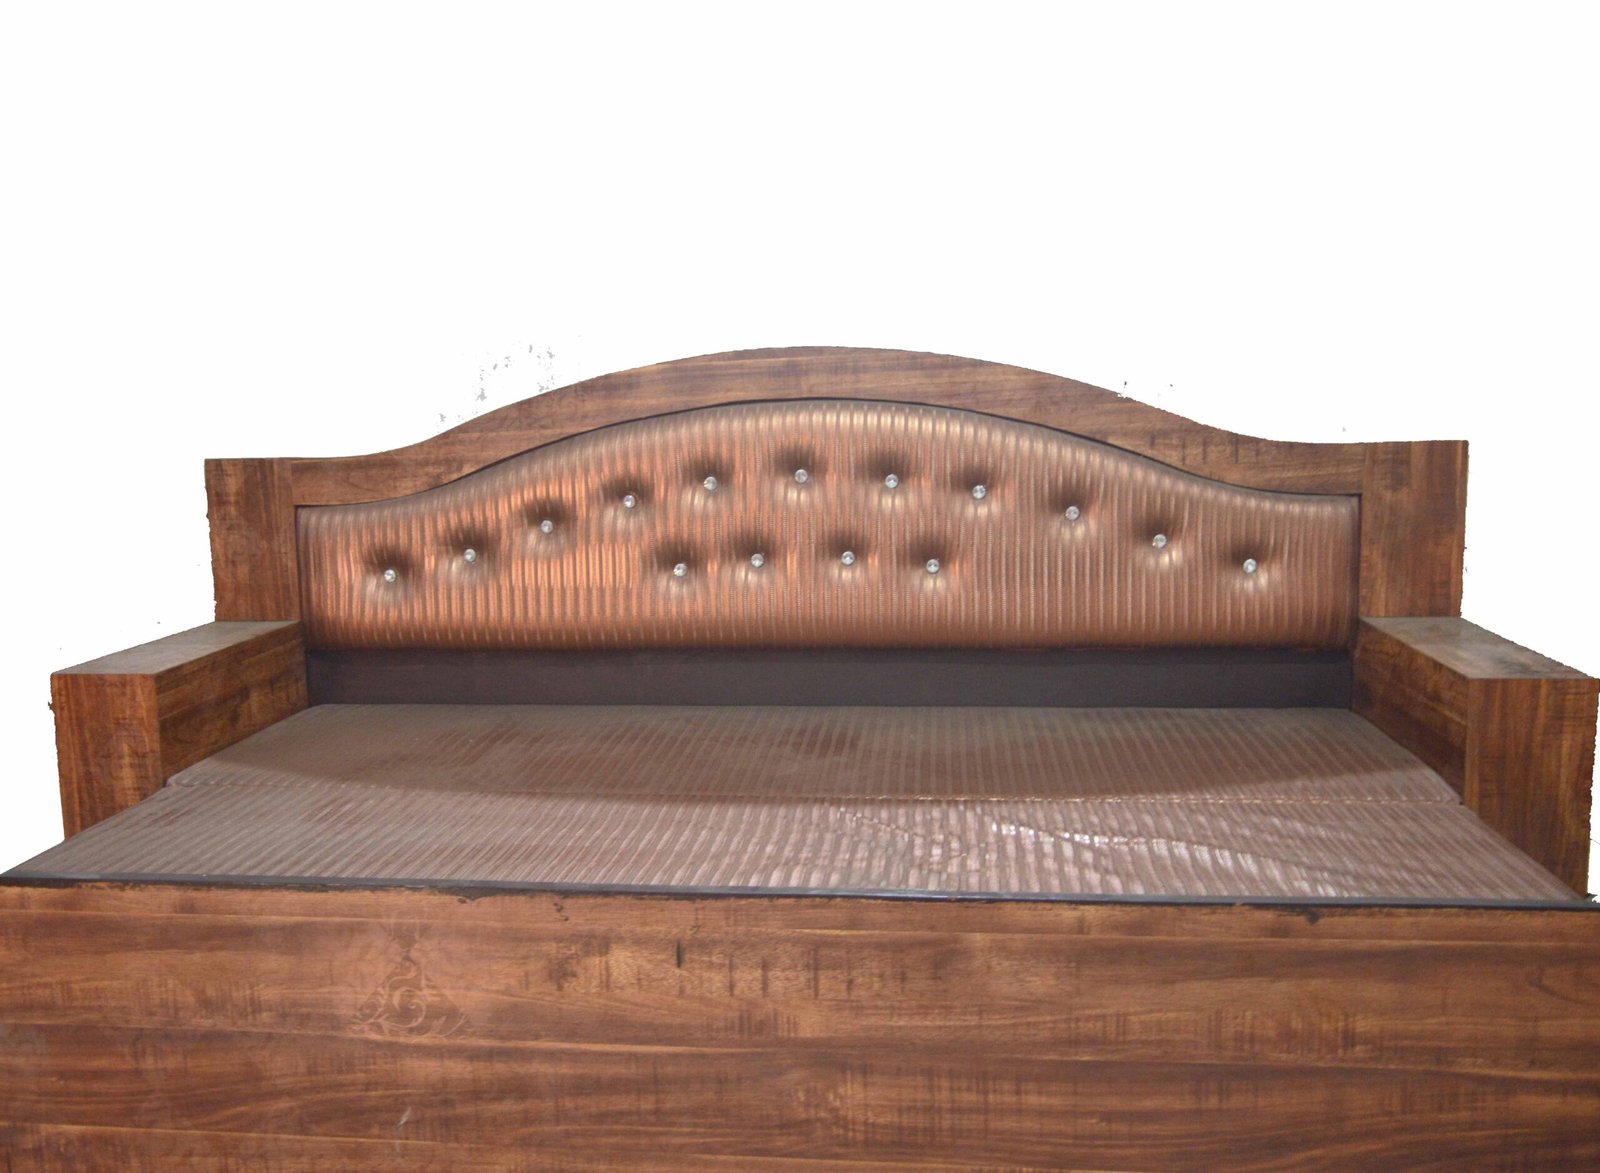 unifoam sofa bed price